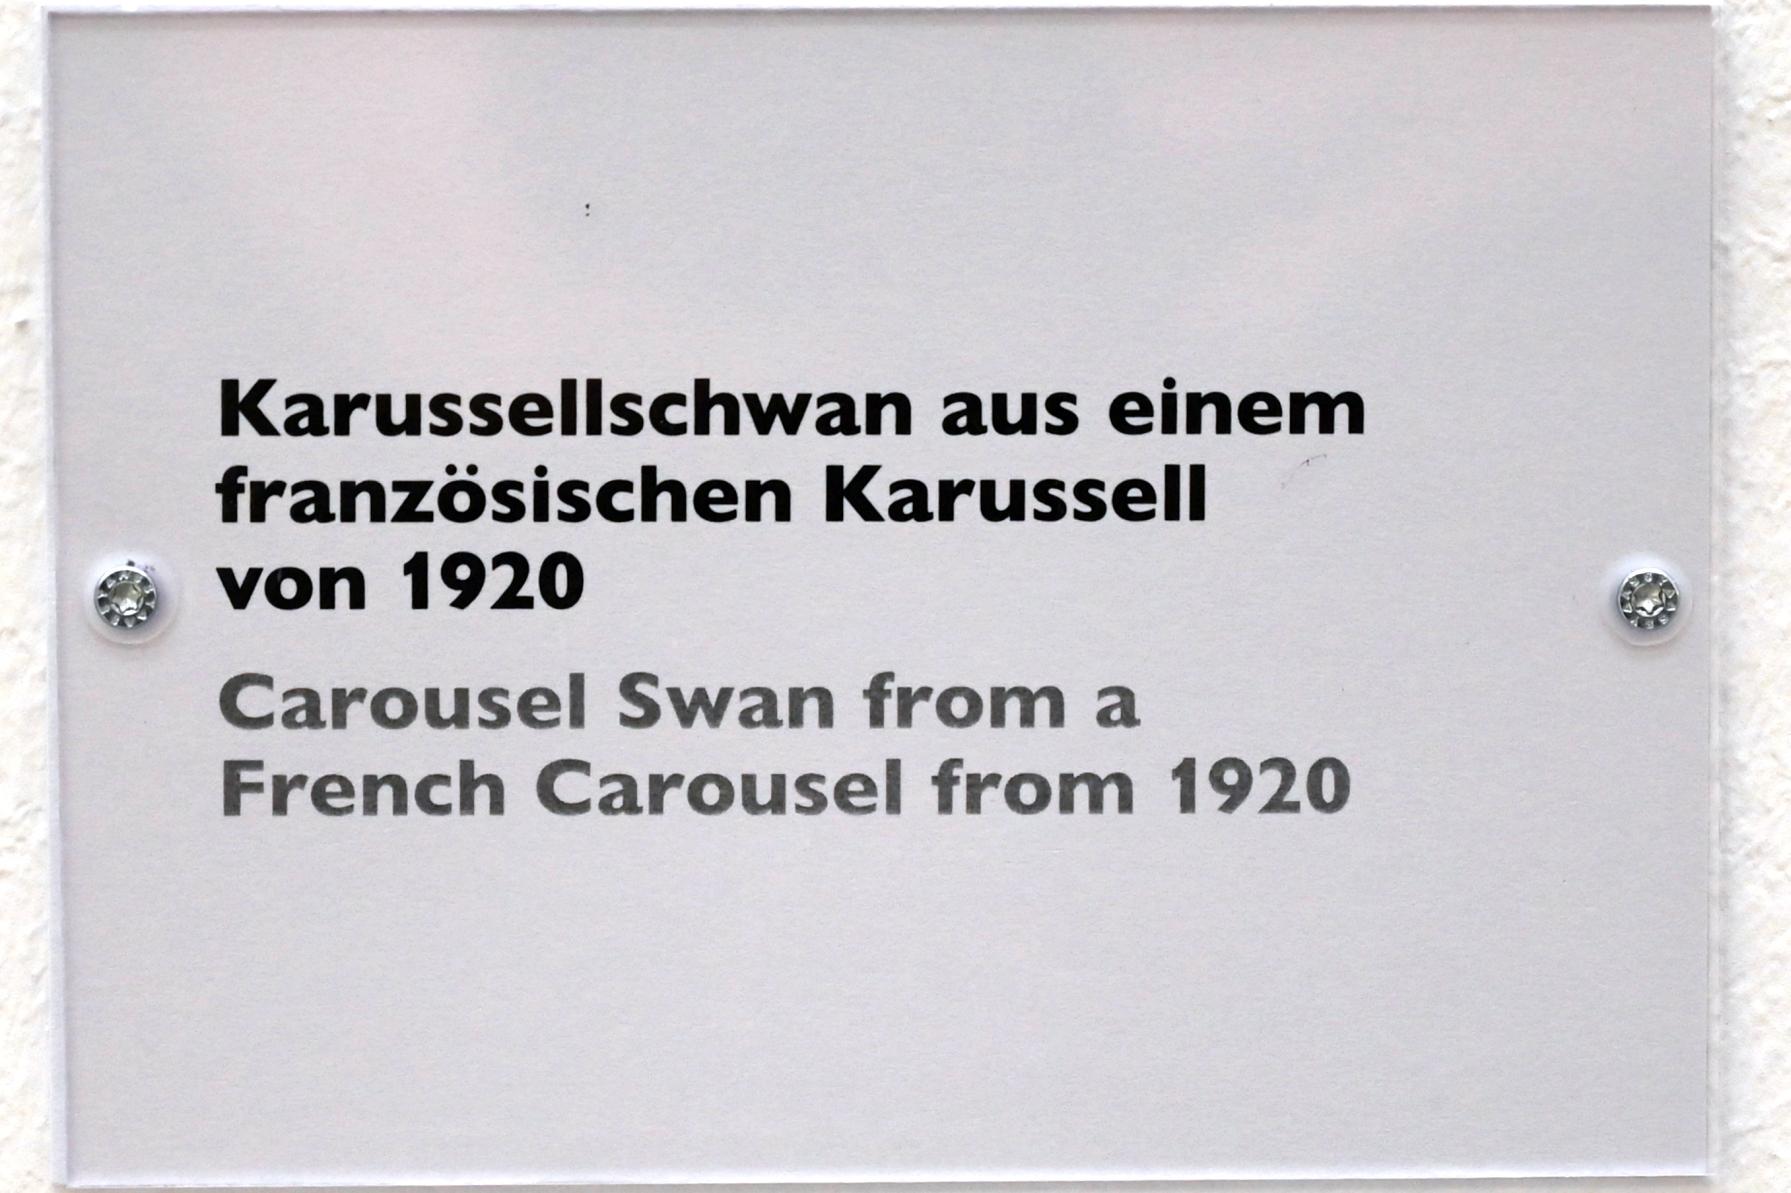 Karussellschwan aus einem französischen Karussell, Schwäbisch Hall, Kunsthalle Würth, Ausstellung "Sport, Spaß und Spiel" vom 13.12.2021 - 26.02.2023, Untergeschoß, 1920, Bild 6/6